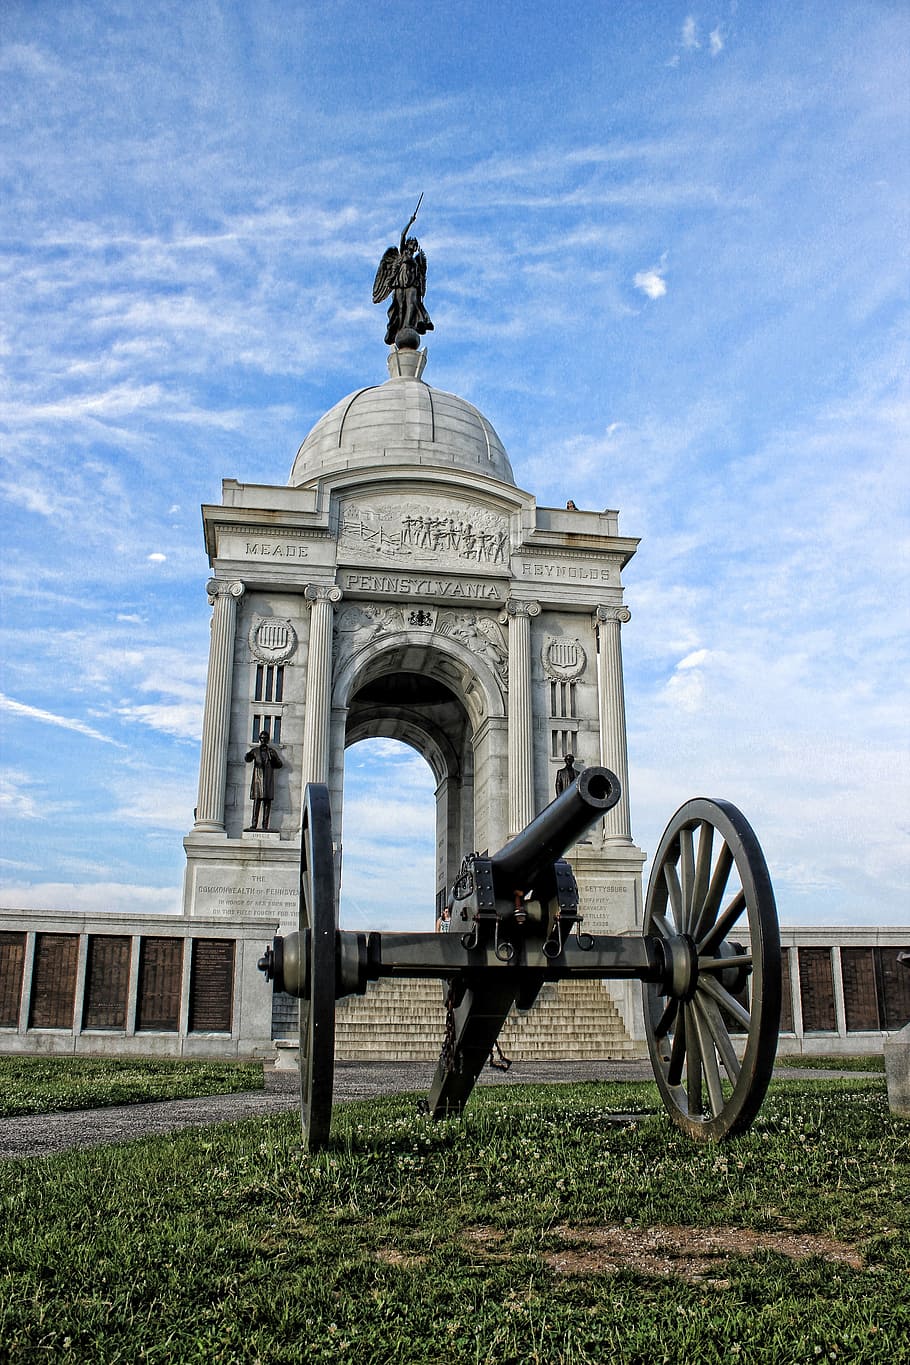 gettysburg, peringatan, patung, perang, sejarah, monumen, taman, sipil, militer, arsitektur